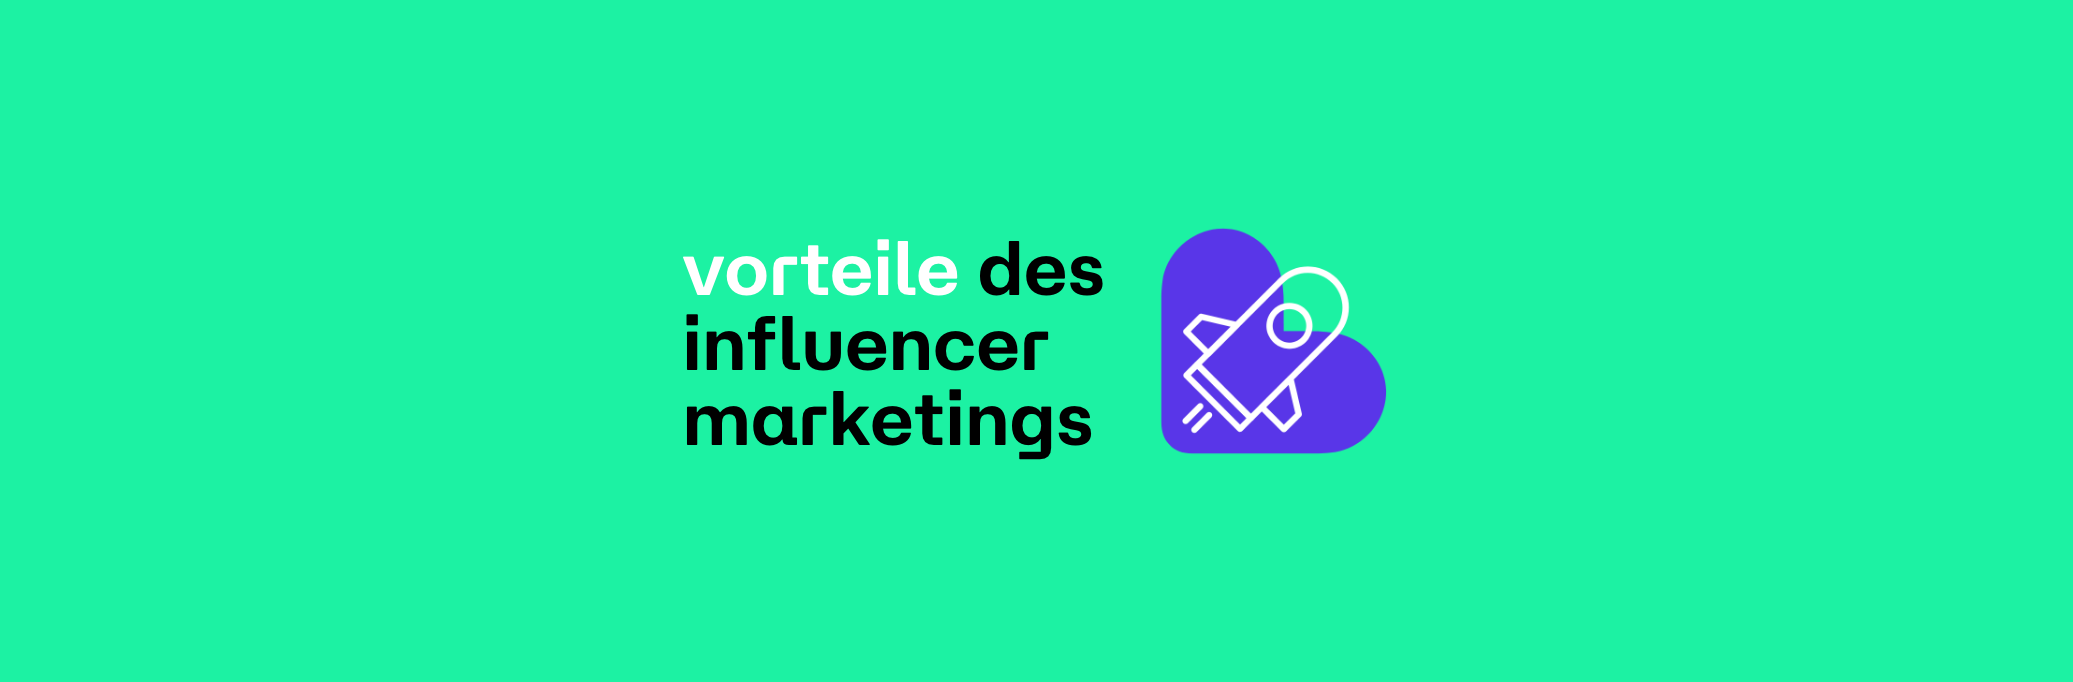 vorteile Influencer Marketing - likeyaa influencer marketing agentur